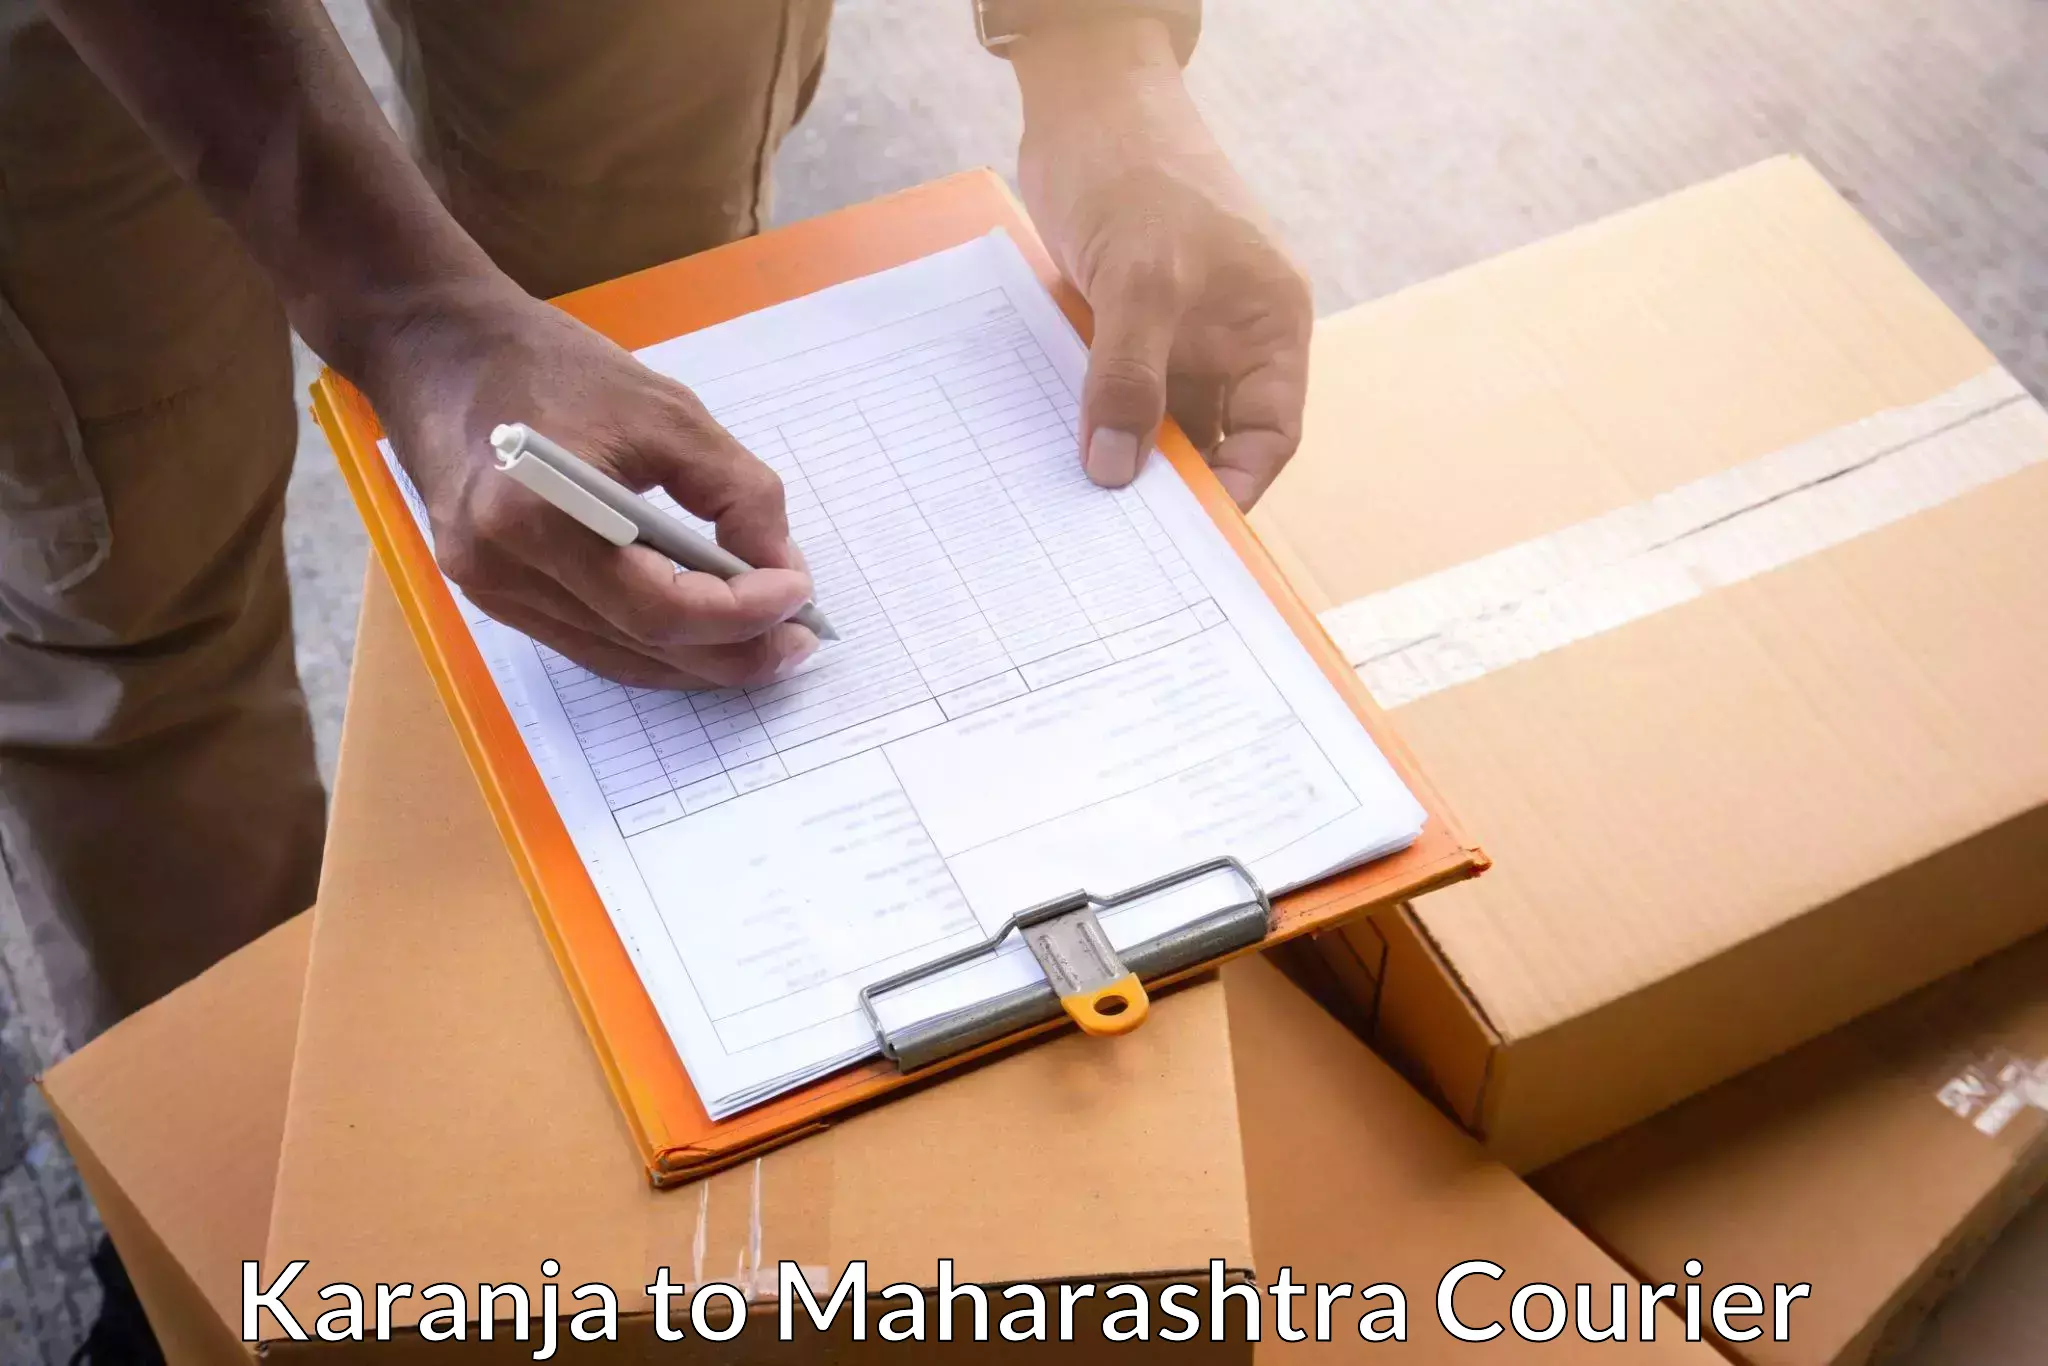 Affordable parcel service Karanja to Mumbai Port